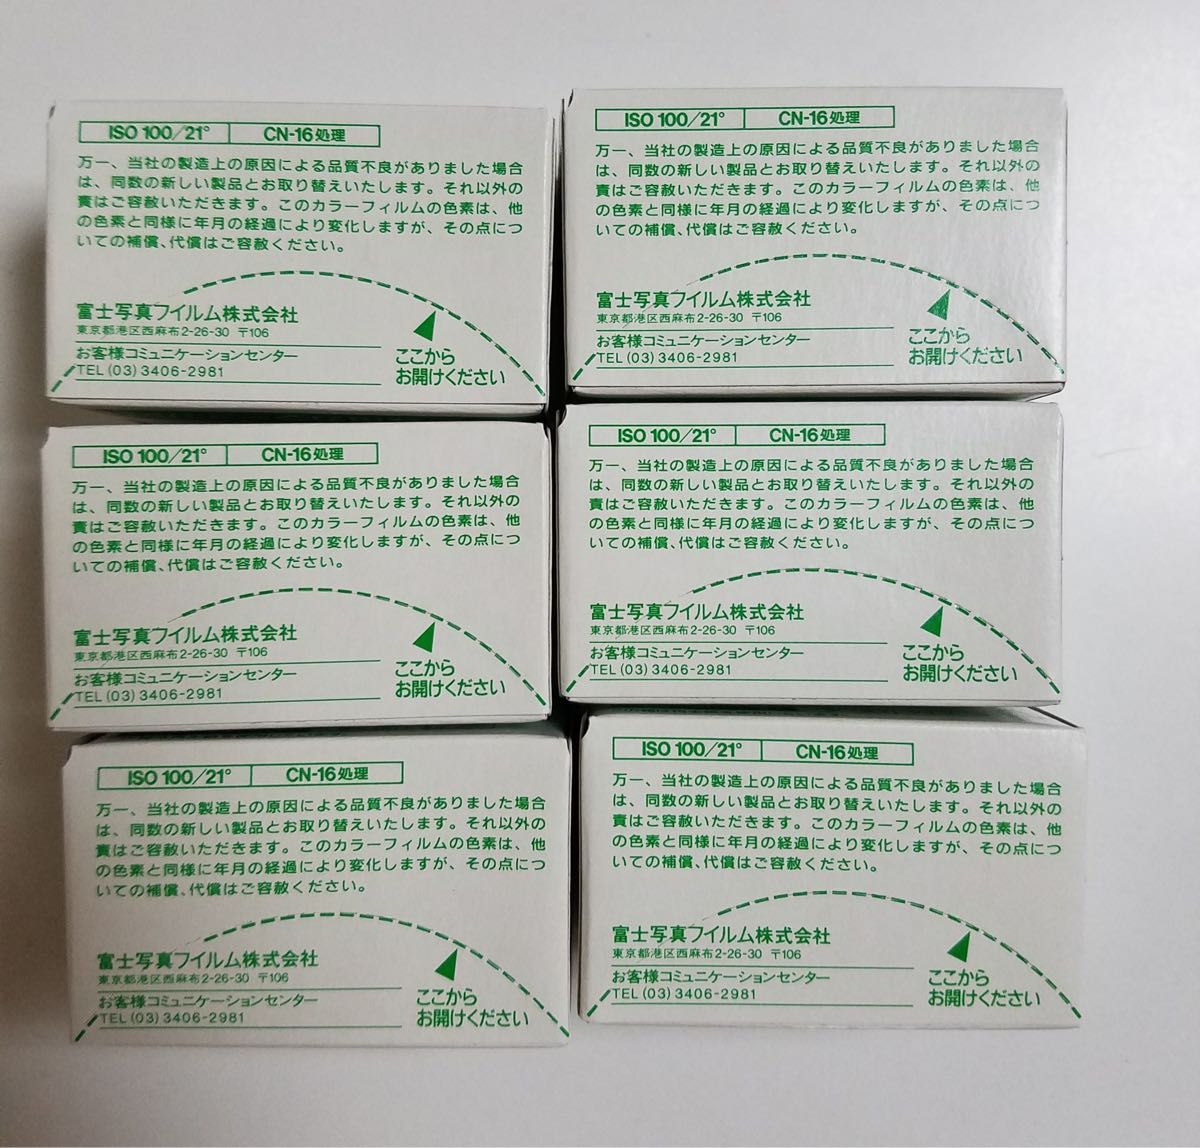 【期限切れ】FUJIFILM 業務用 記録用カラーフィルム 6本